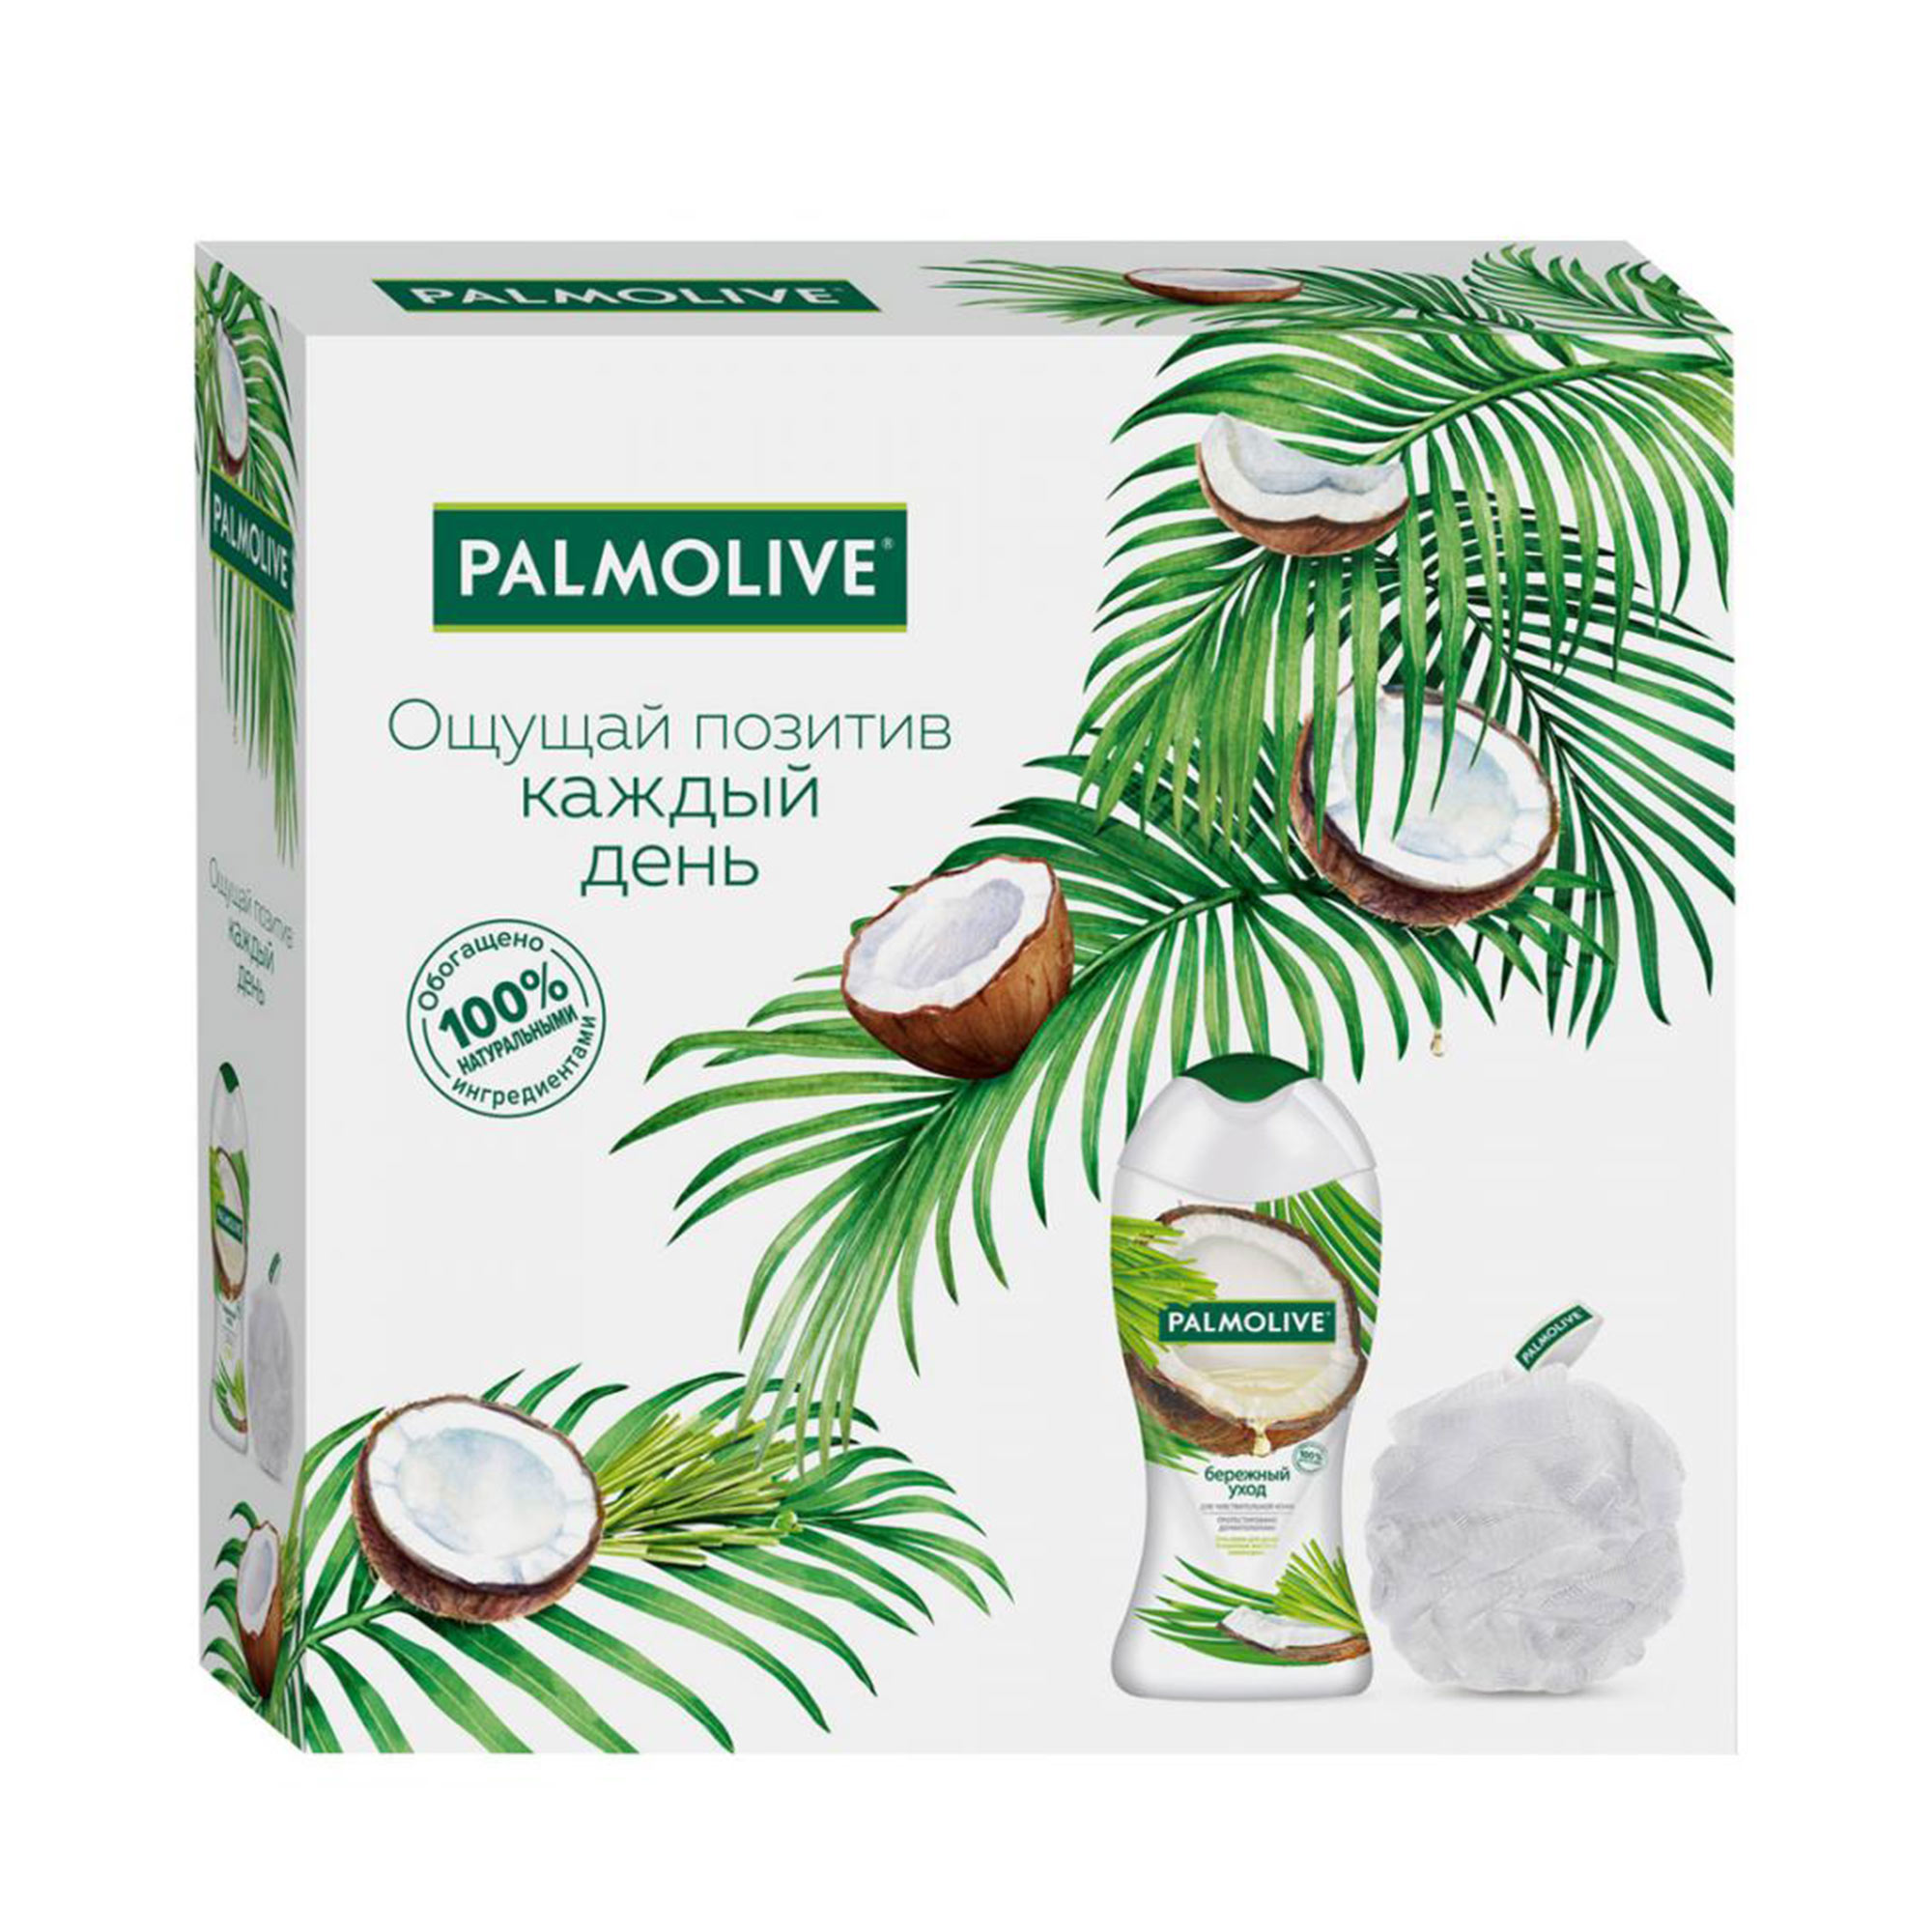 фото Подарочный набор palmolive бережный уход кокос 2 предмета colgate-palmolive